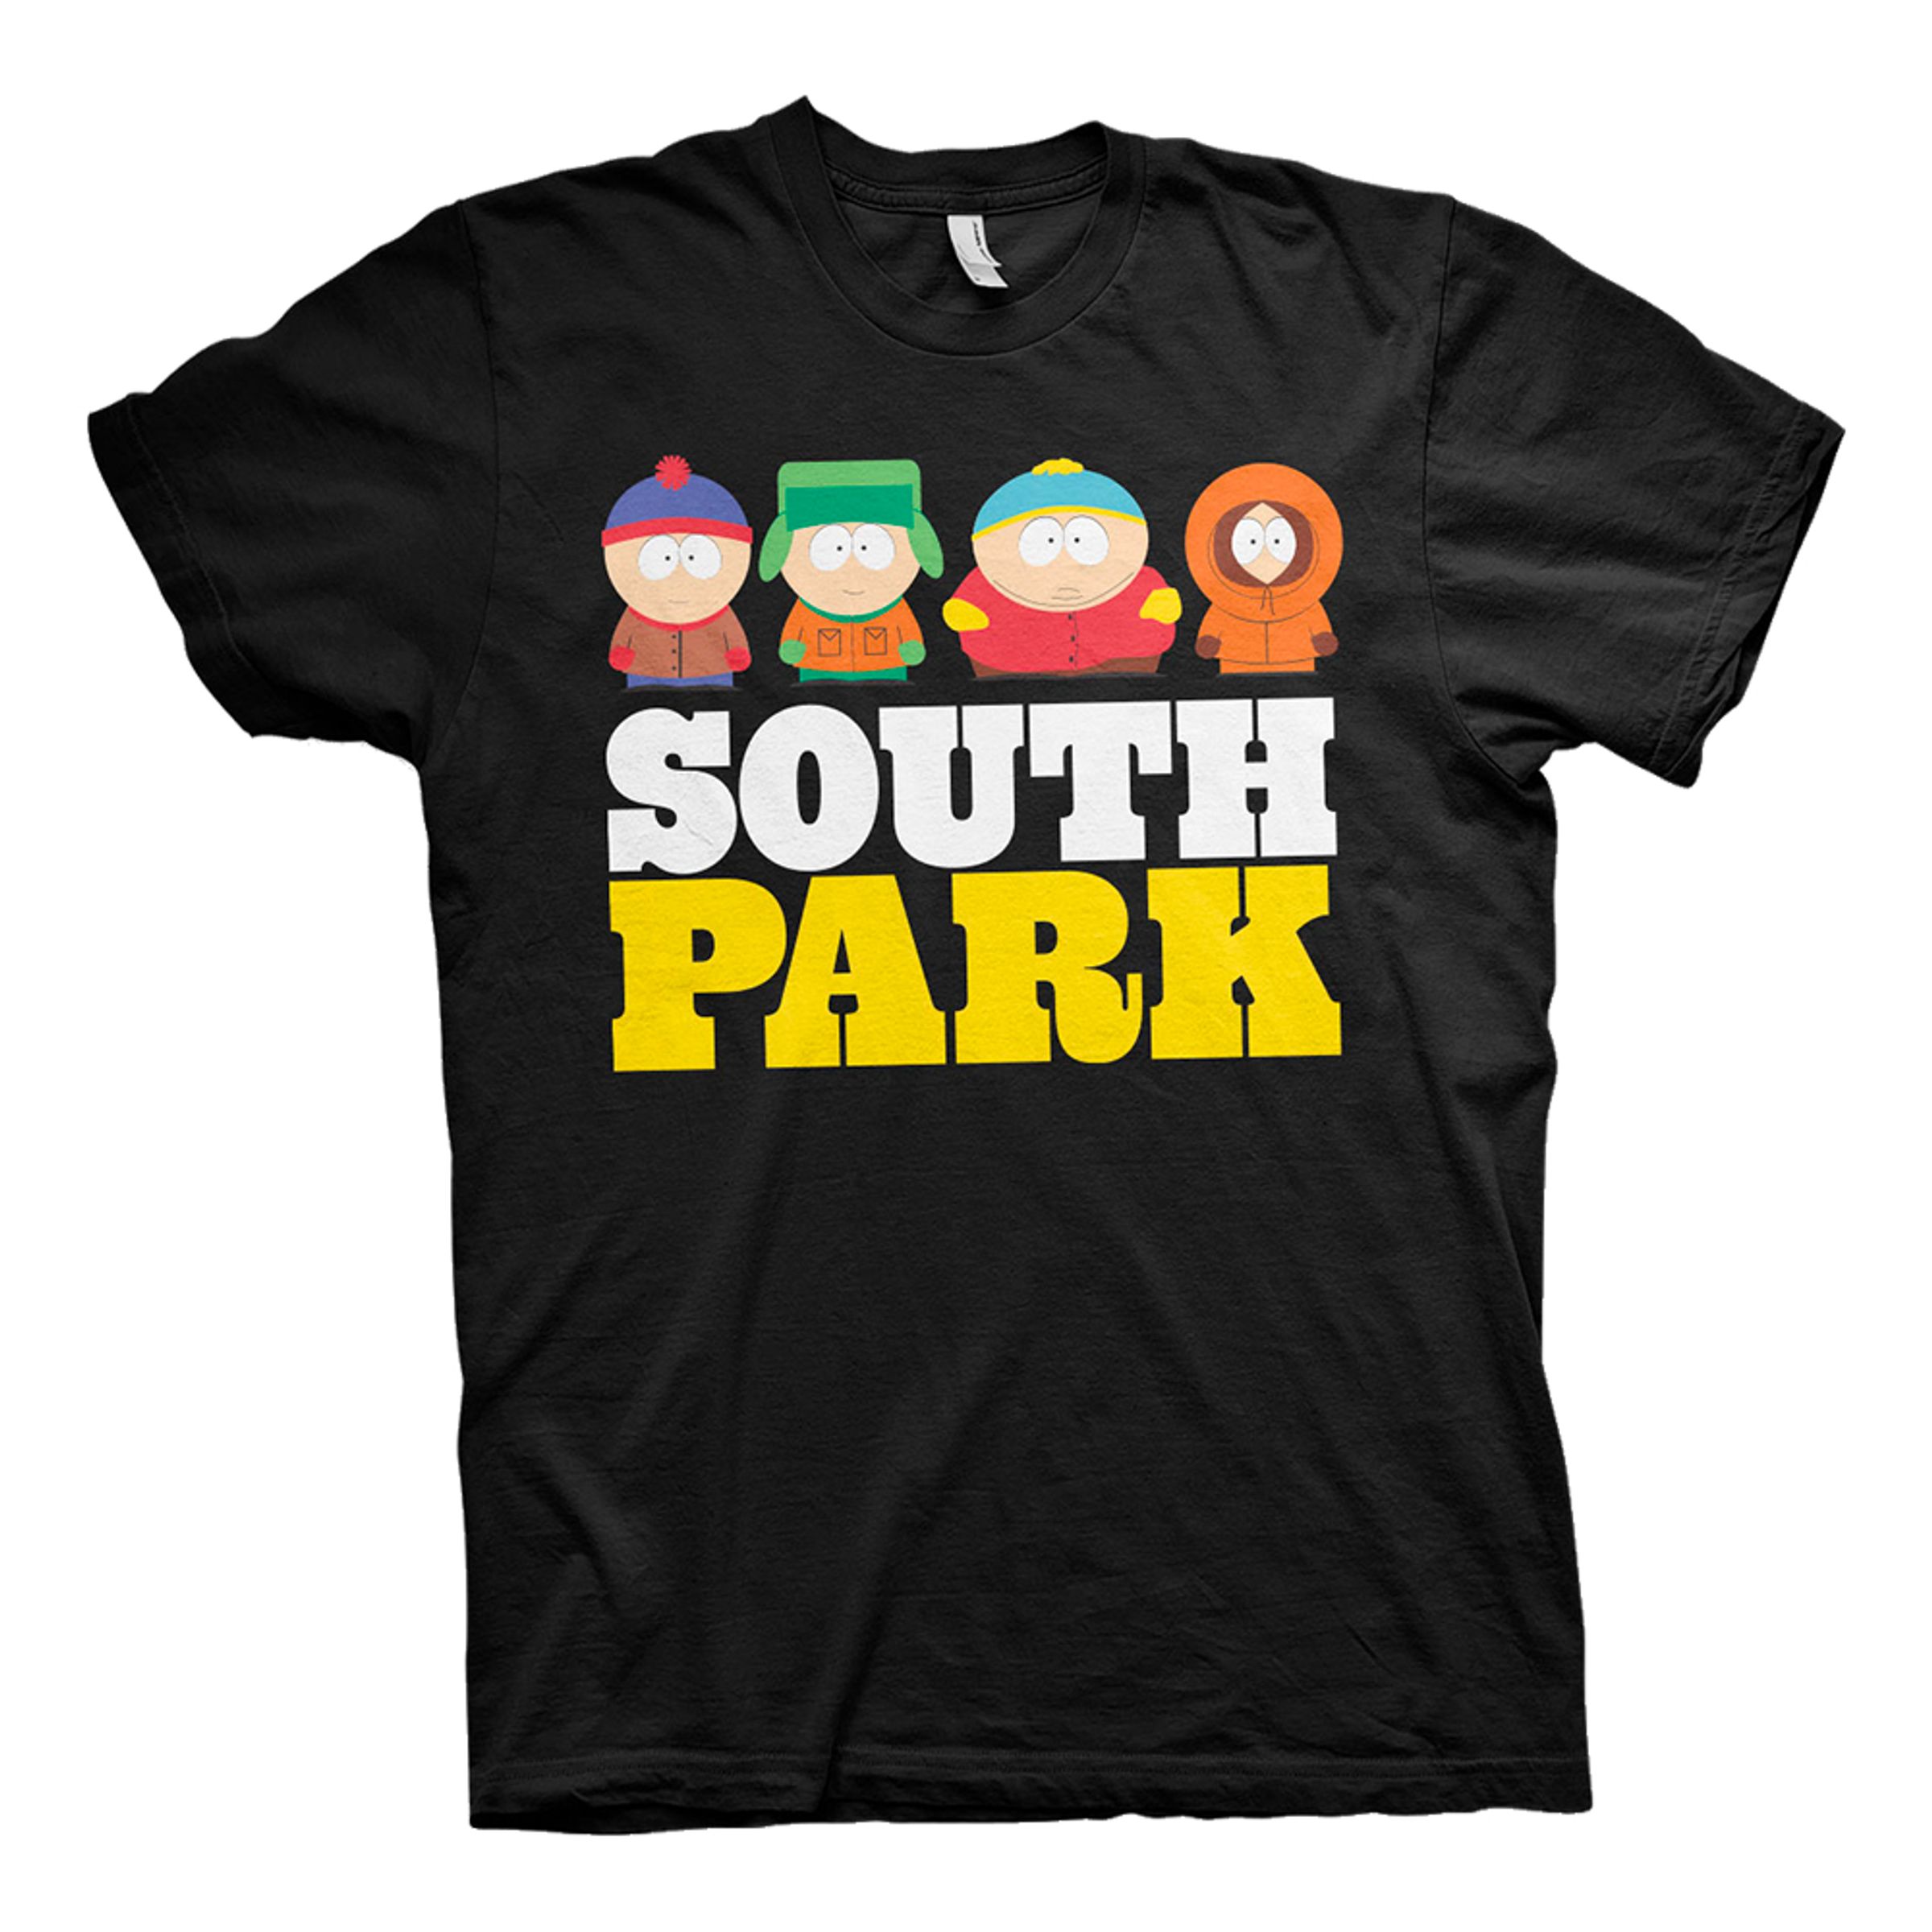 South Park T-shirt - XX-Large